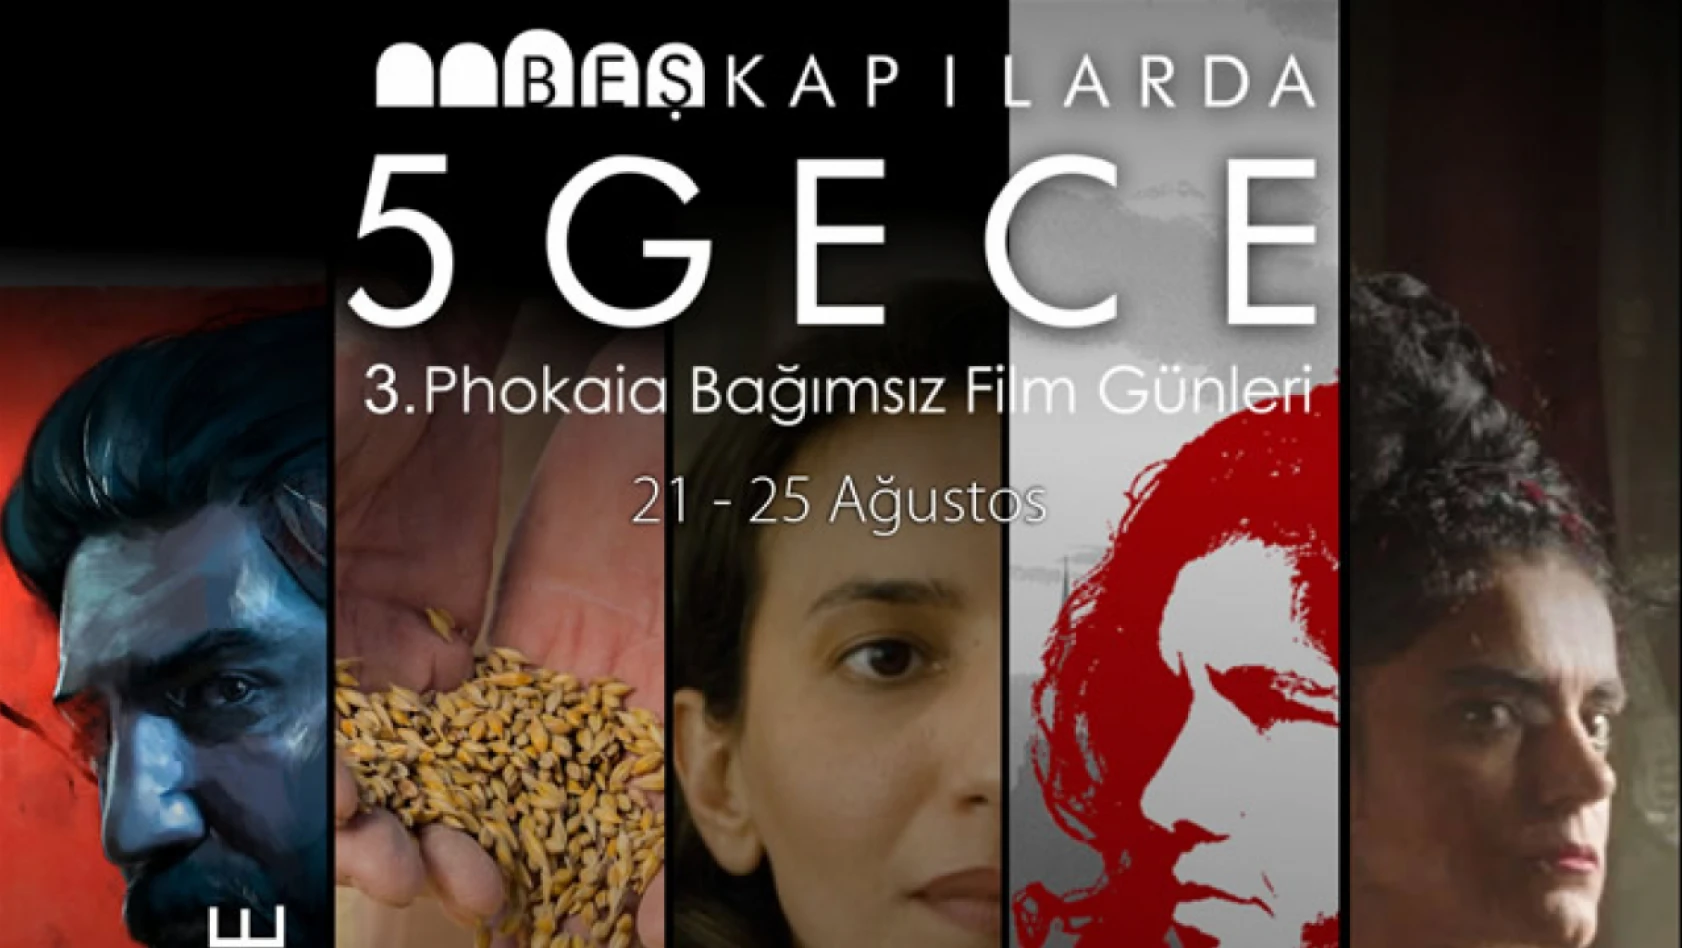 Beşkapılar'da 5 Gece Phokaia Bağımsız Film Günleri başlıyor